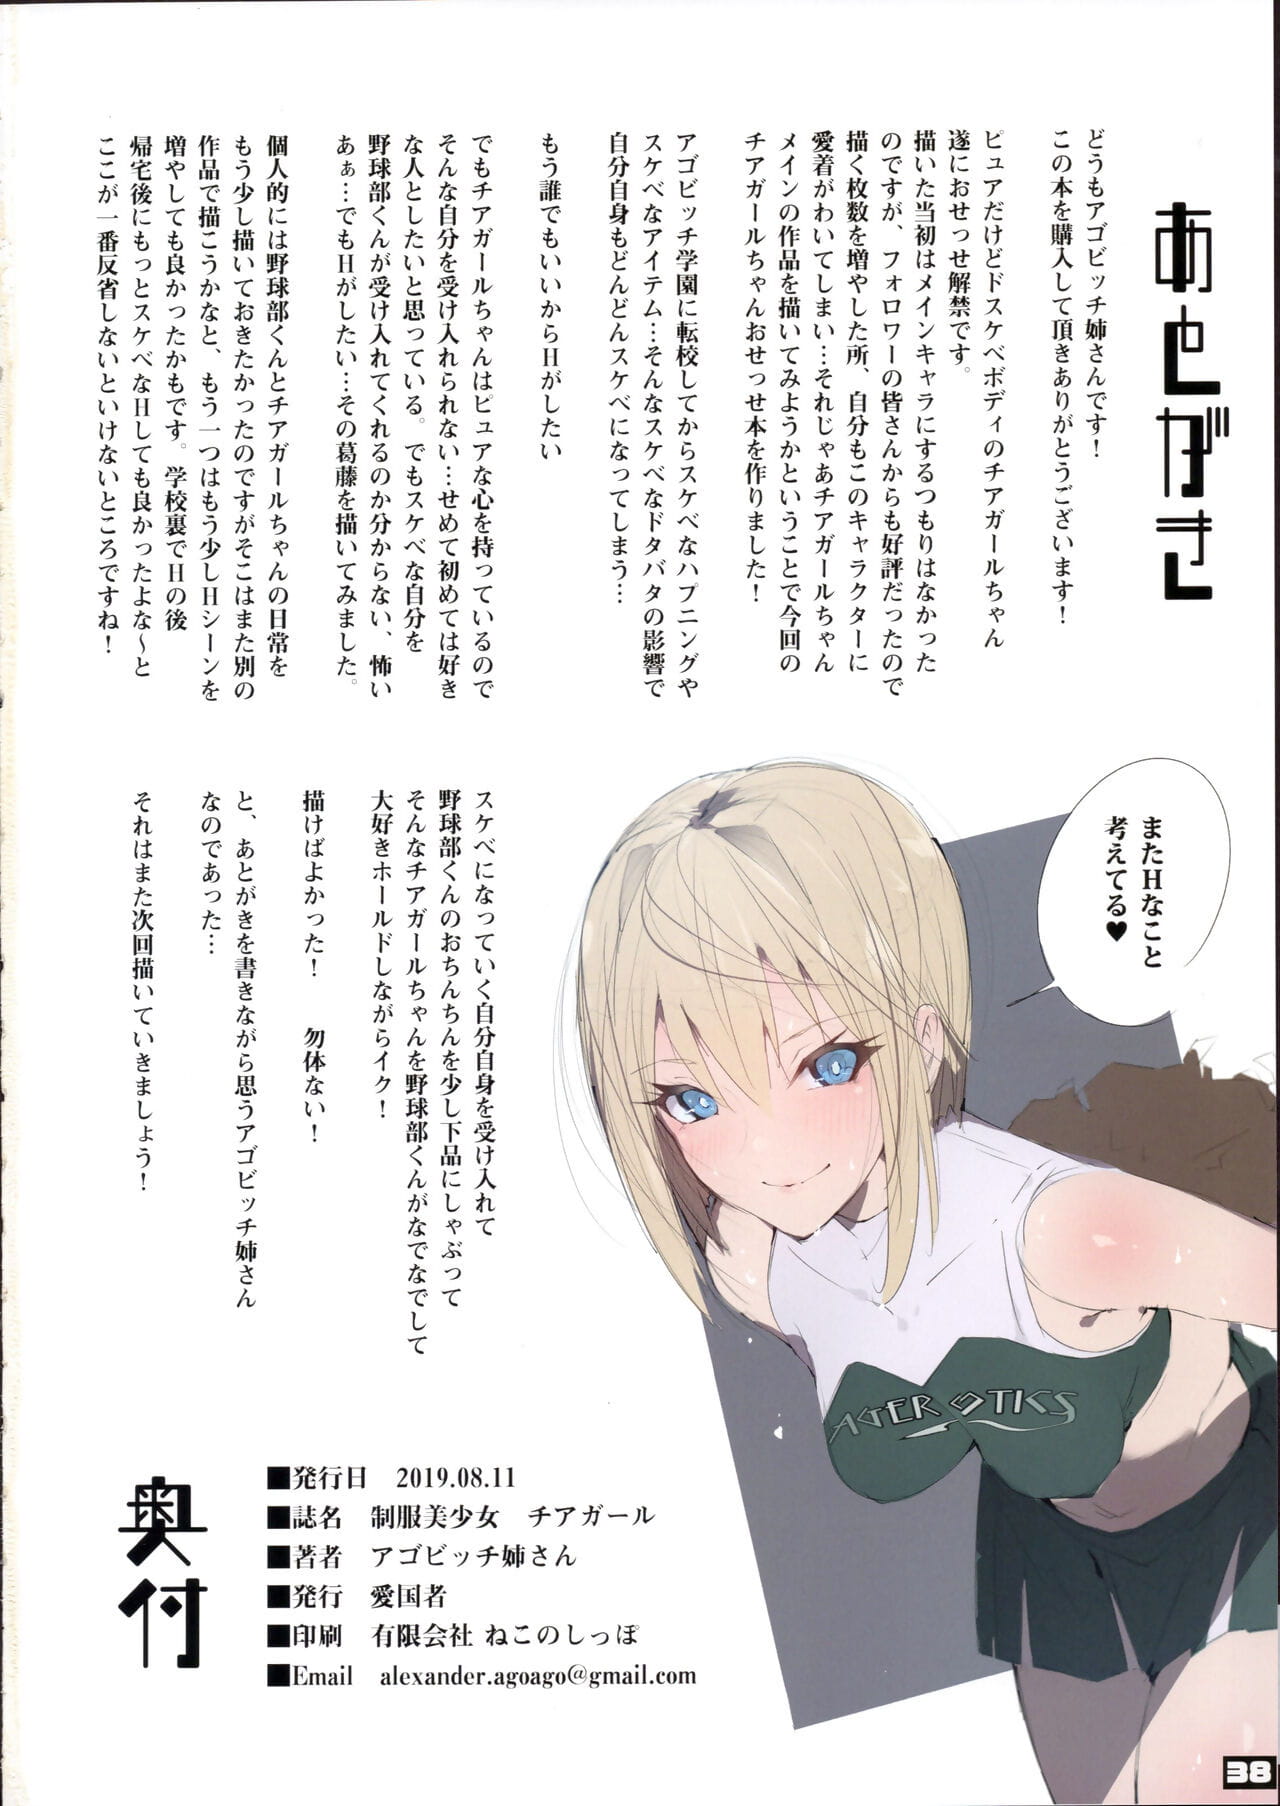 seifuku nội dung chưa được xếp Vui :cô gái: page 1